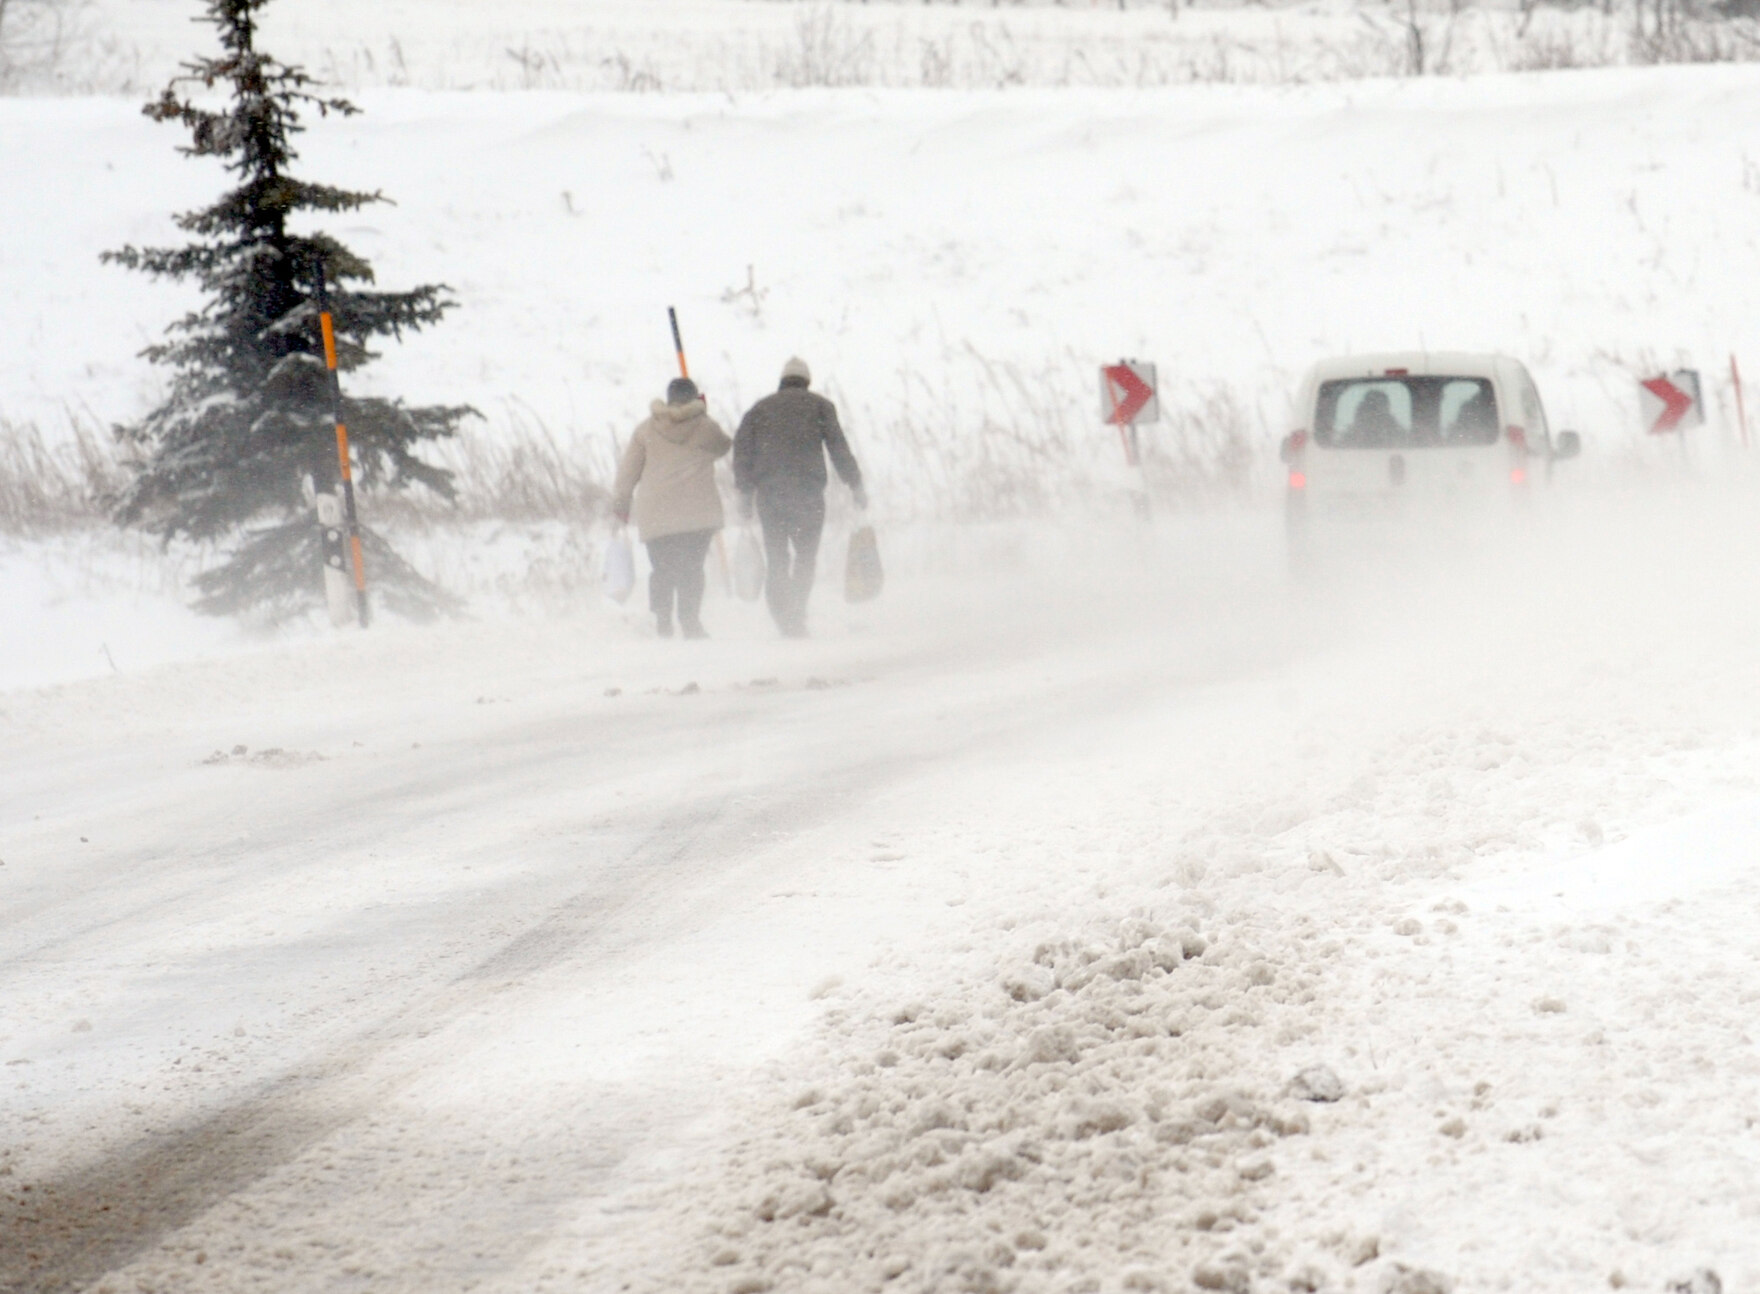 Stürmische Verwehungen auf einer verschneiten Landstraße